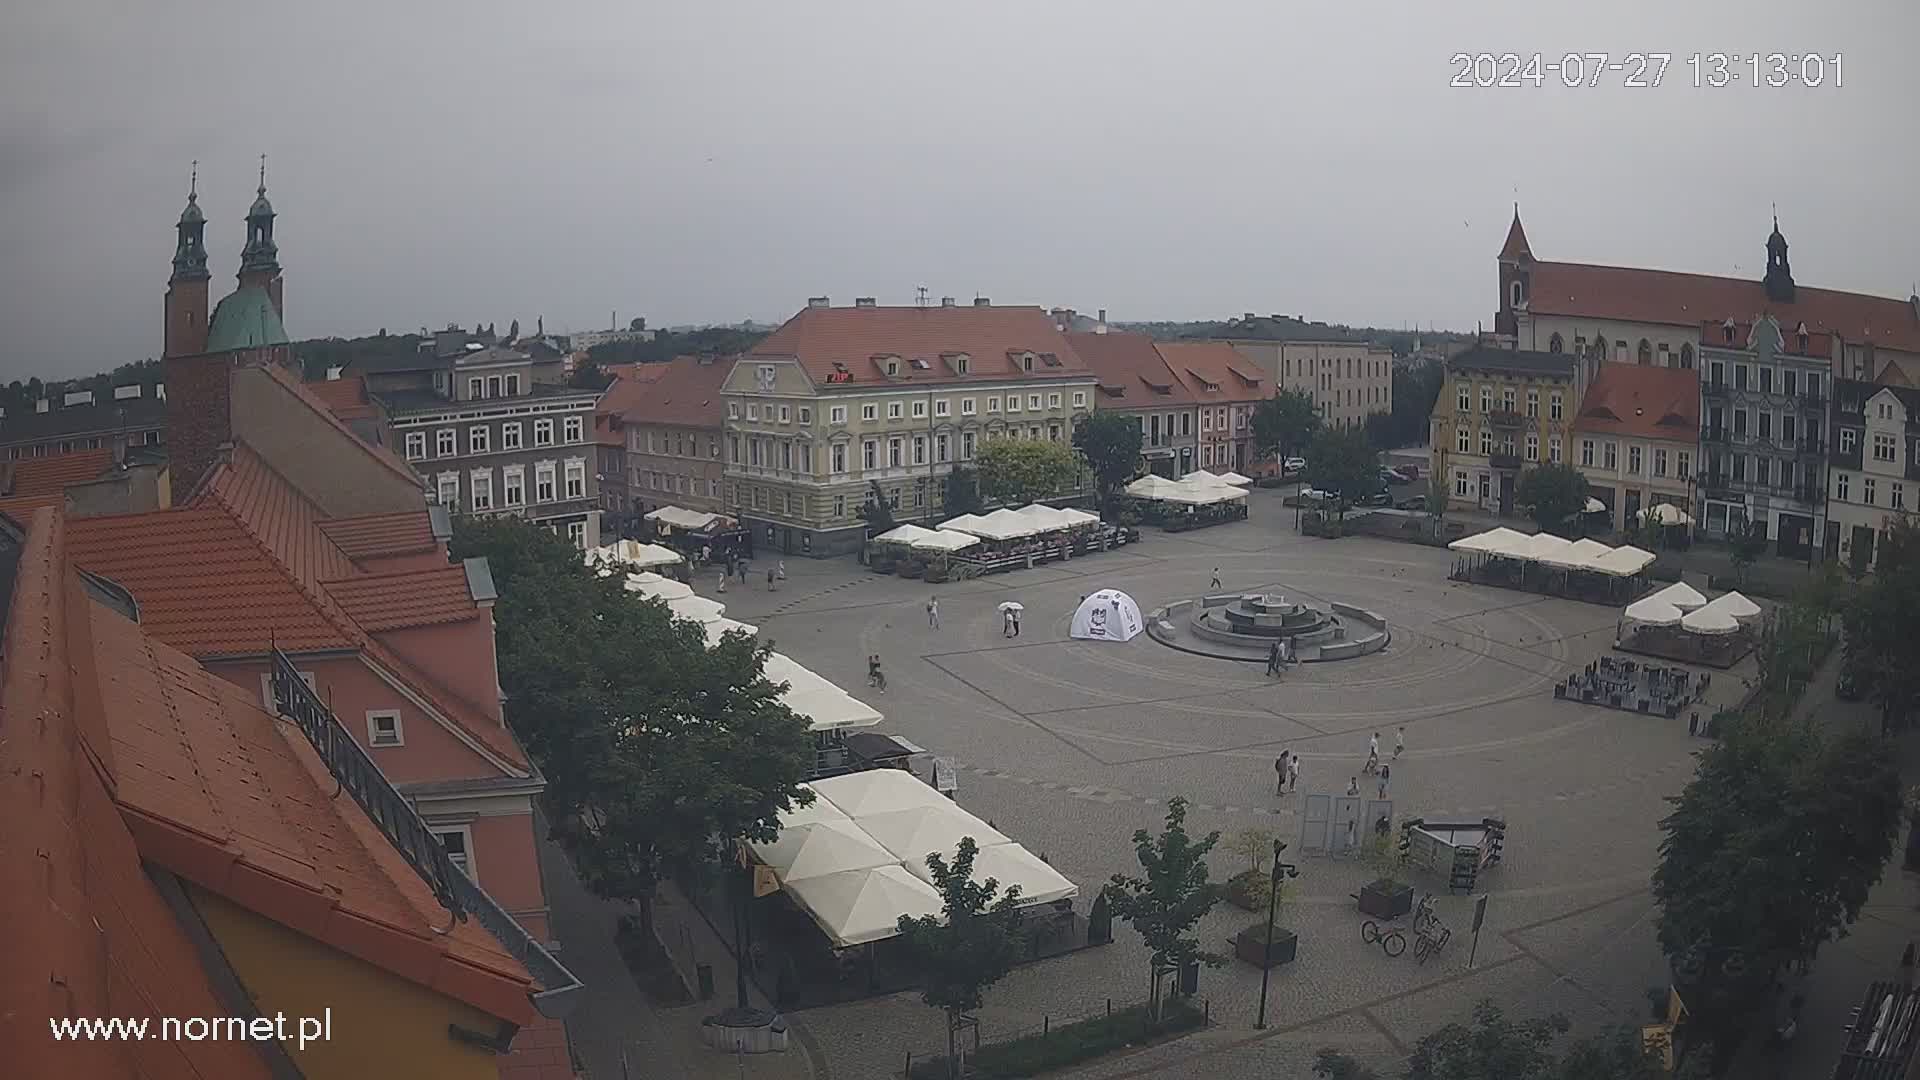 Gniezno - Market Square